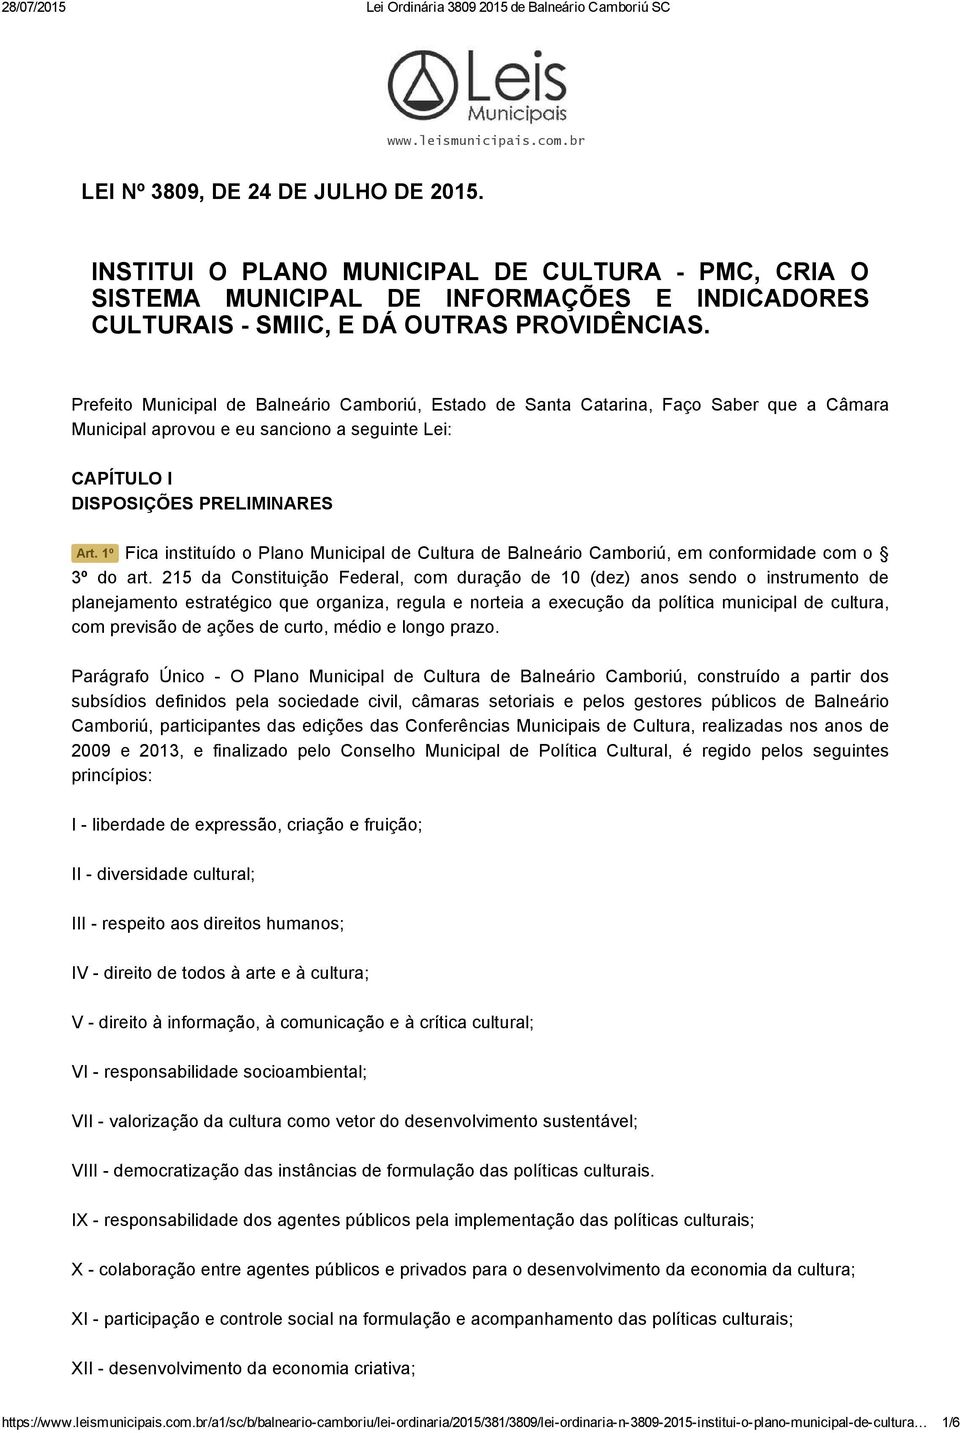 Prefeito Municipal de Balneário Camboriú, Estado de Santa Catarina, Faço Saber que a Câmara Municipal aprovou e eu sanciono a seguinte Lei: CAPÍTULO I DISPOSIÇÕES PRELIMINARES Art.